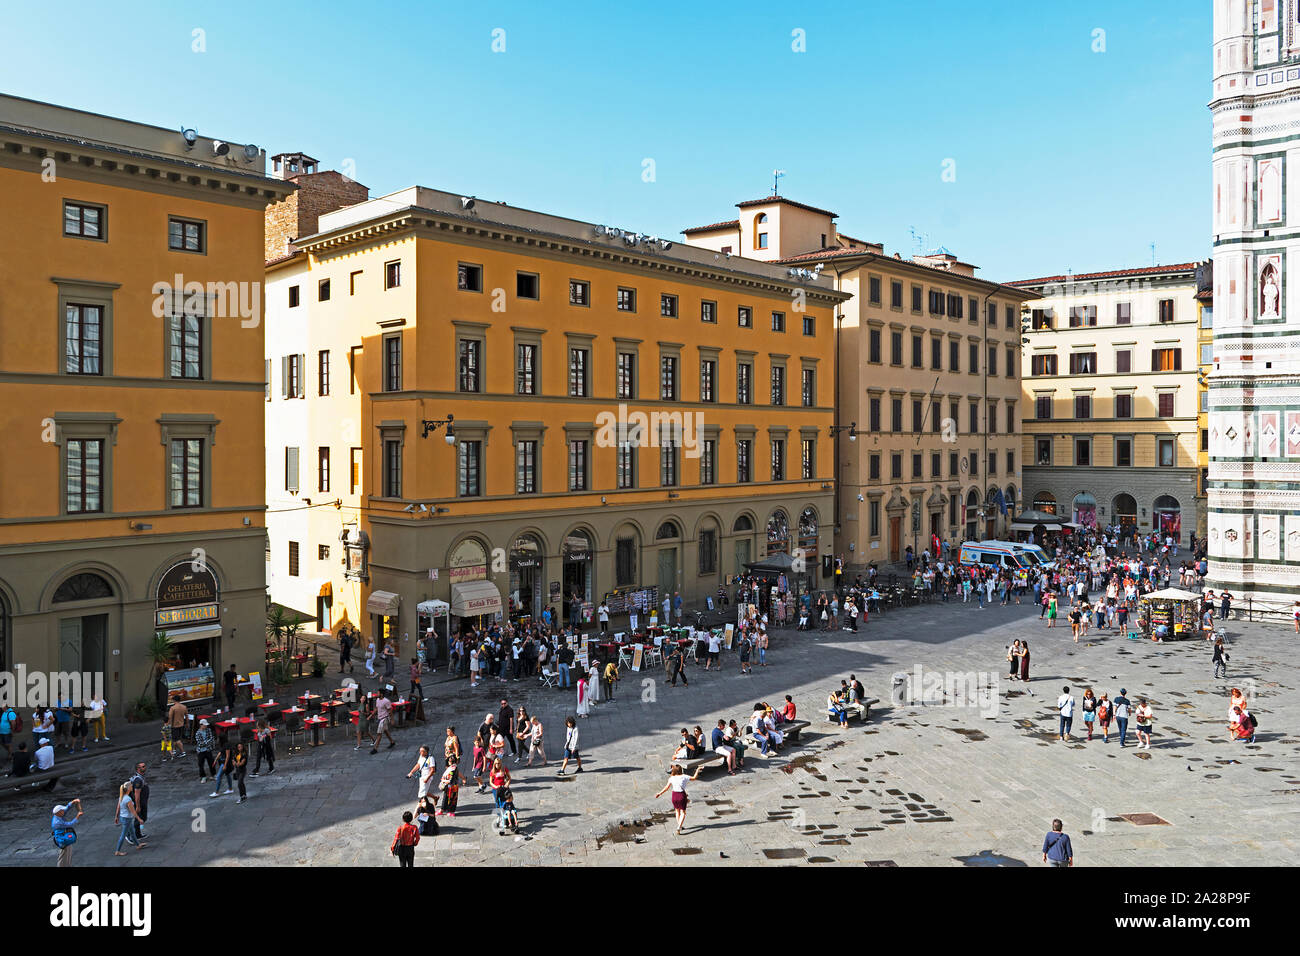 Les touristes sur la piazza del Duomo de la ville de florence, toscane, italie. Banque D'Images